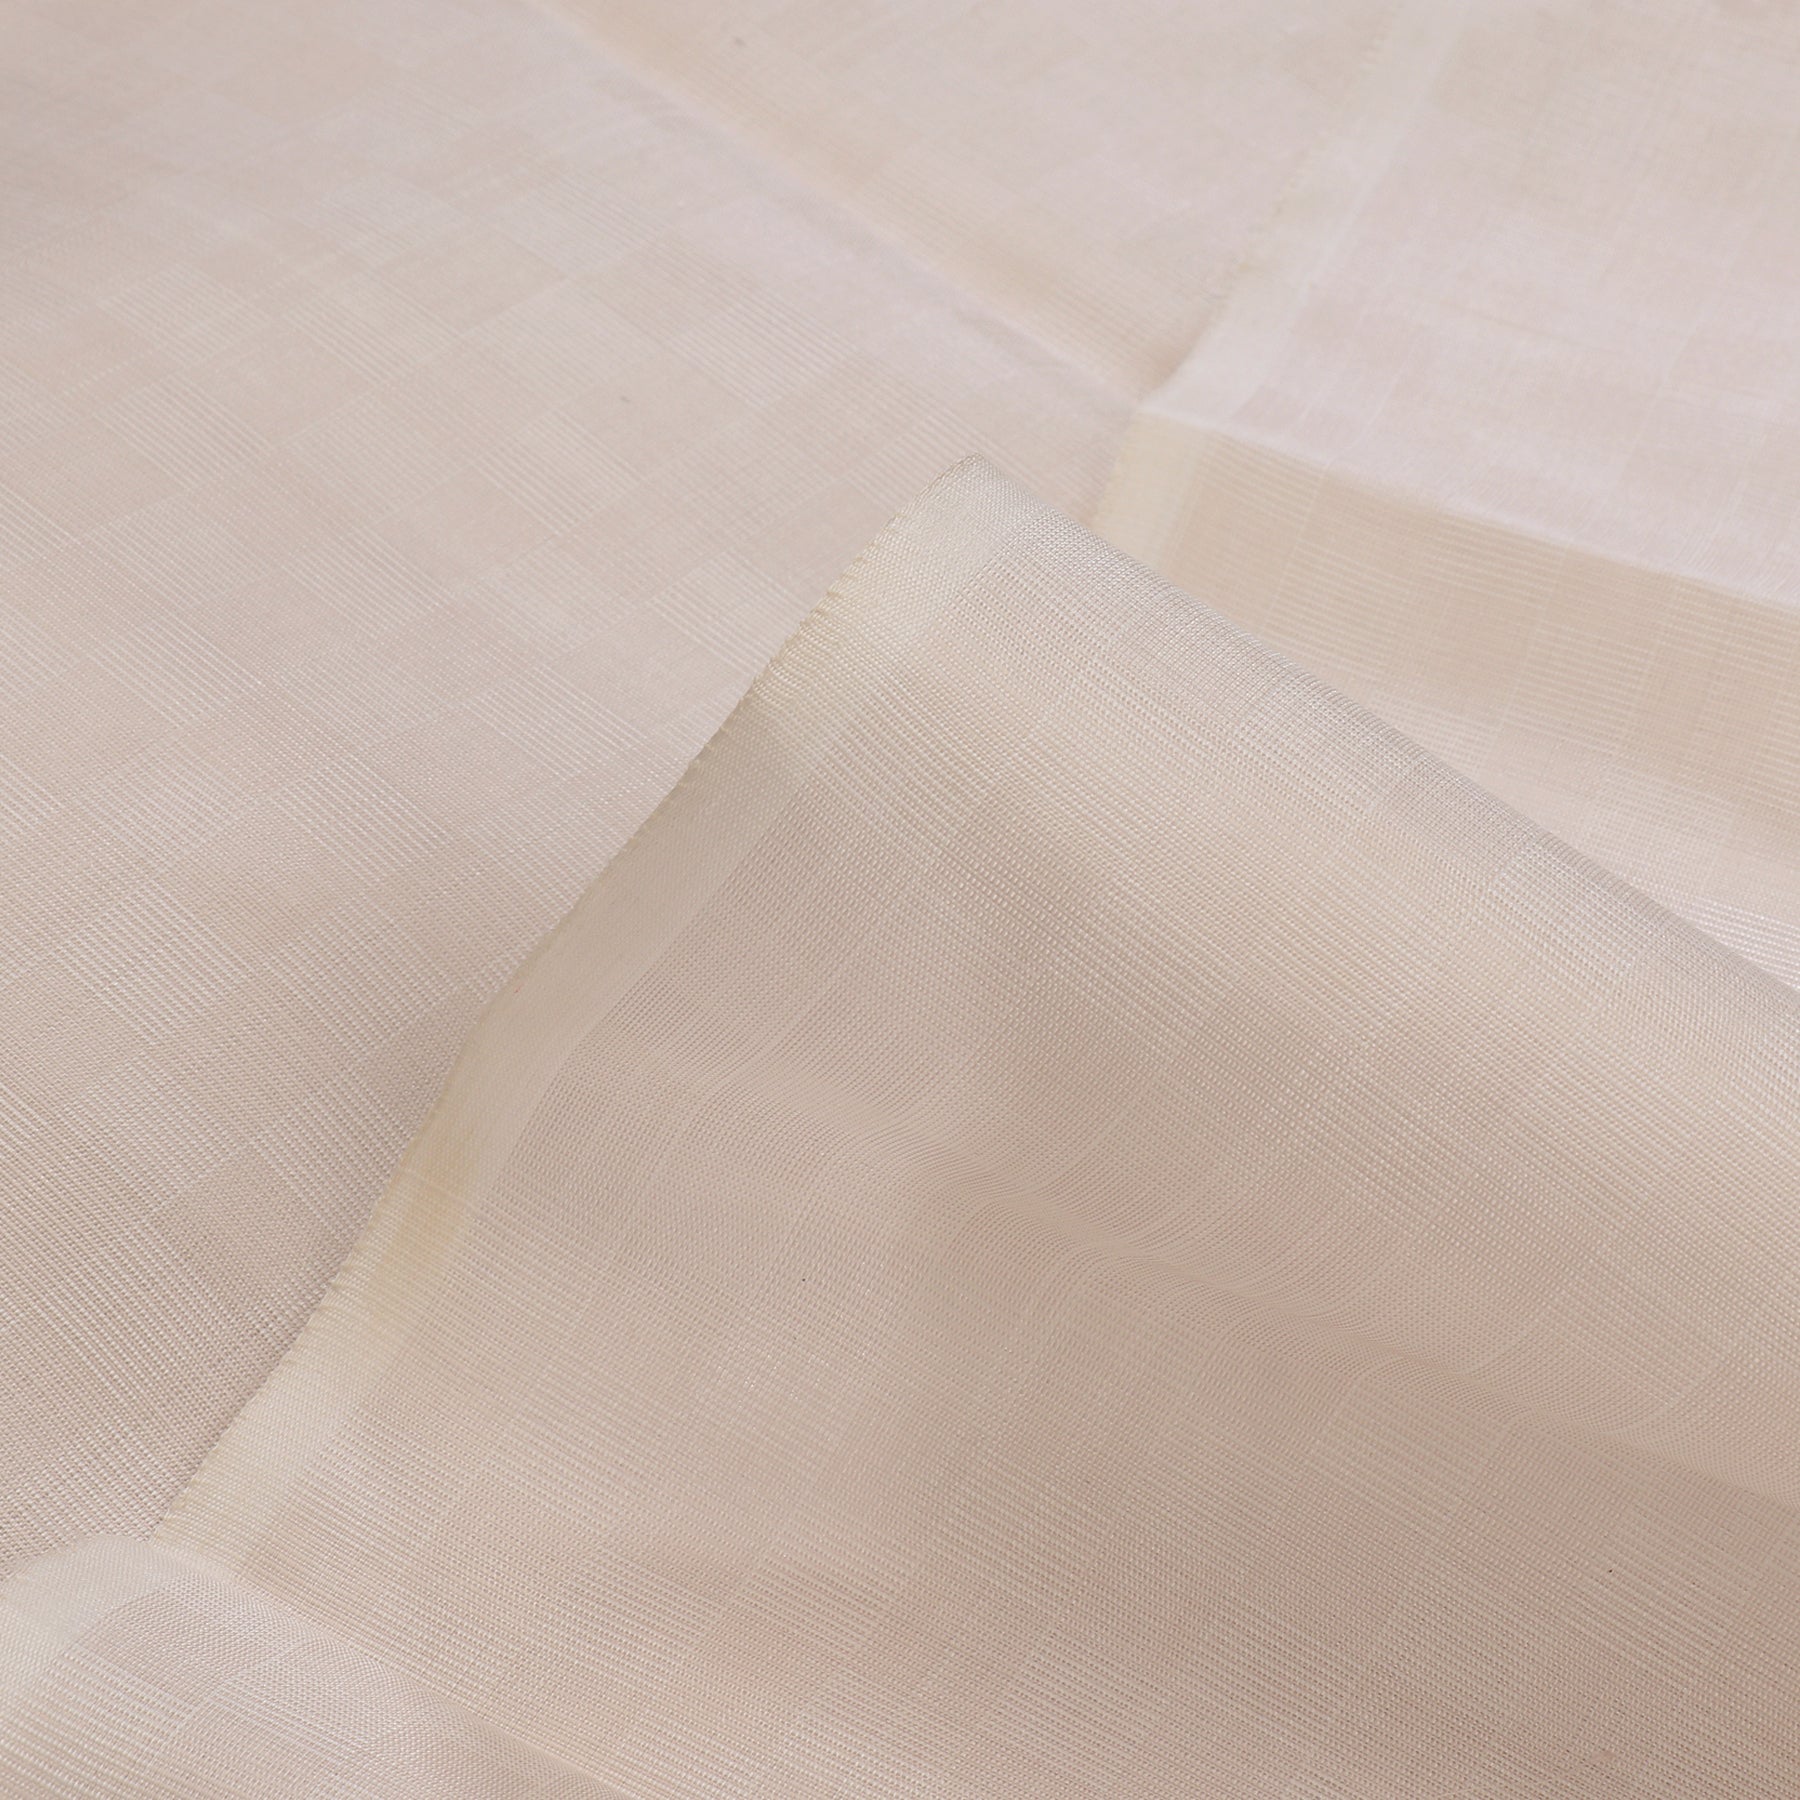 Kanakavalli Kanjivaram Silk Fabric Length 110-27-110237 - Profile View